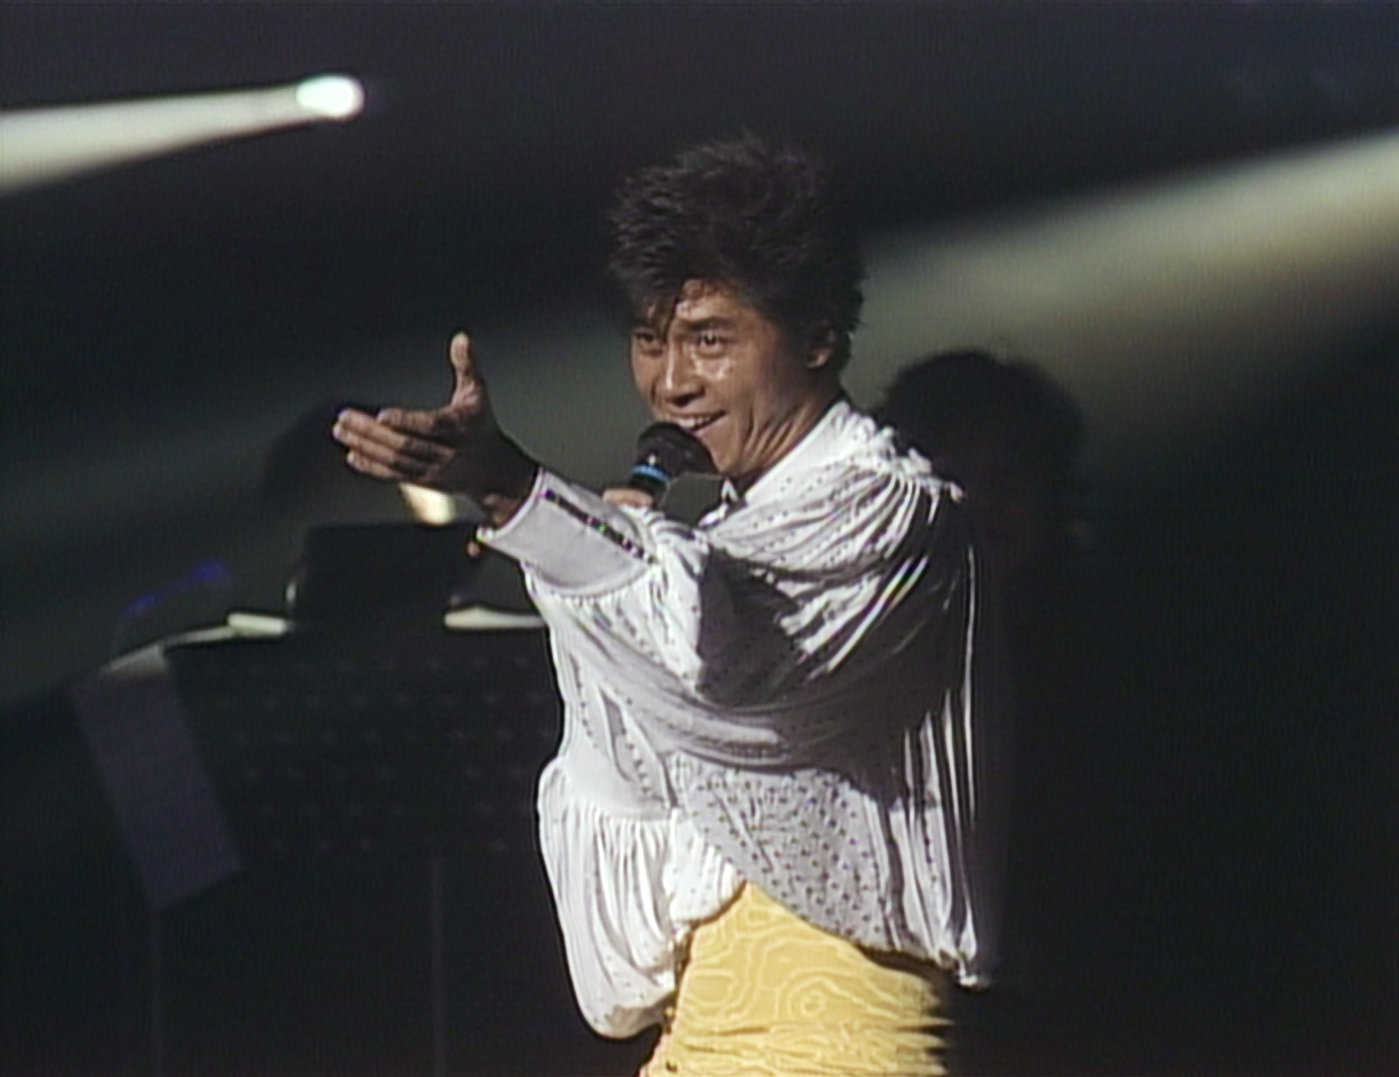 西城秀樹1985年の武道館公演を初BD化、発売前日に全国の映画館で上映会も | Musicman